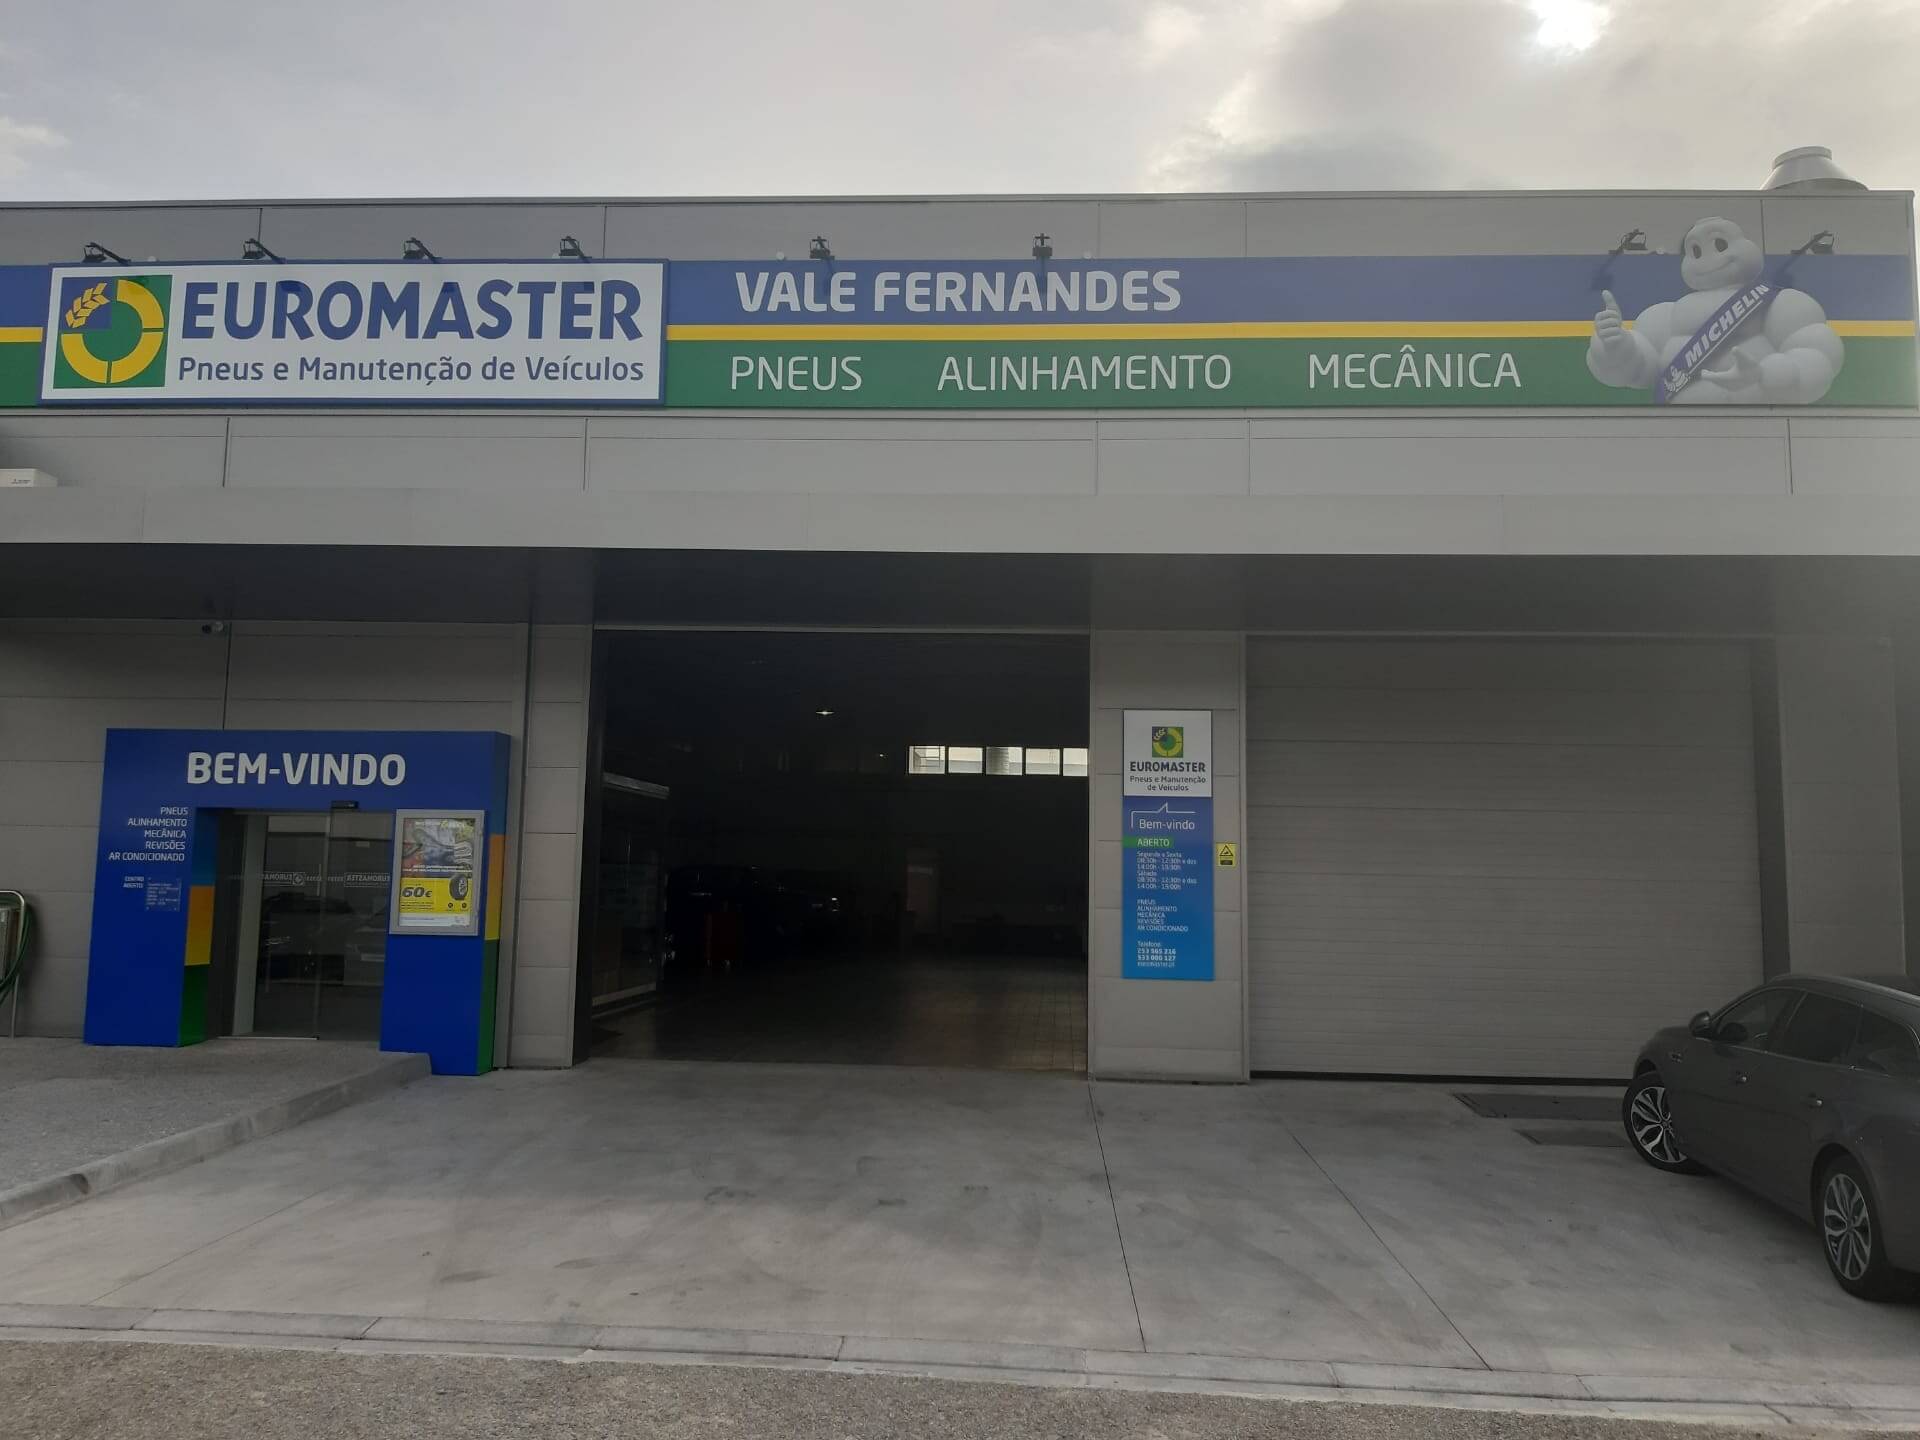 Images Euromaster Vale Fernandes Guimarães